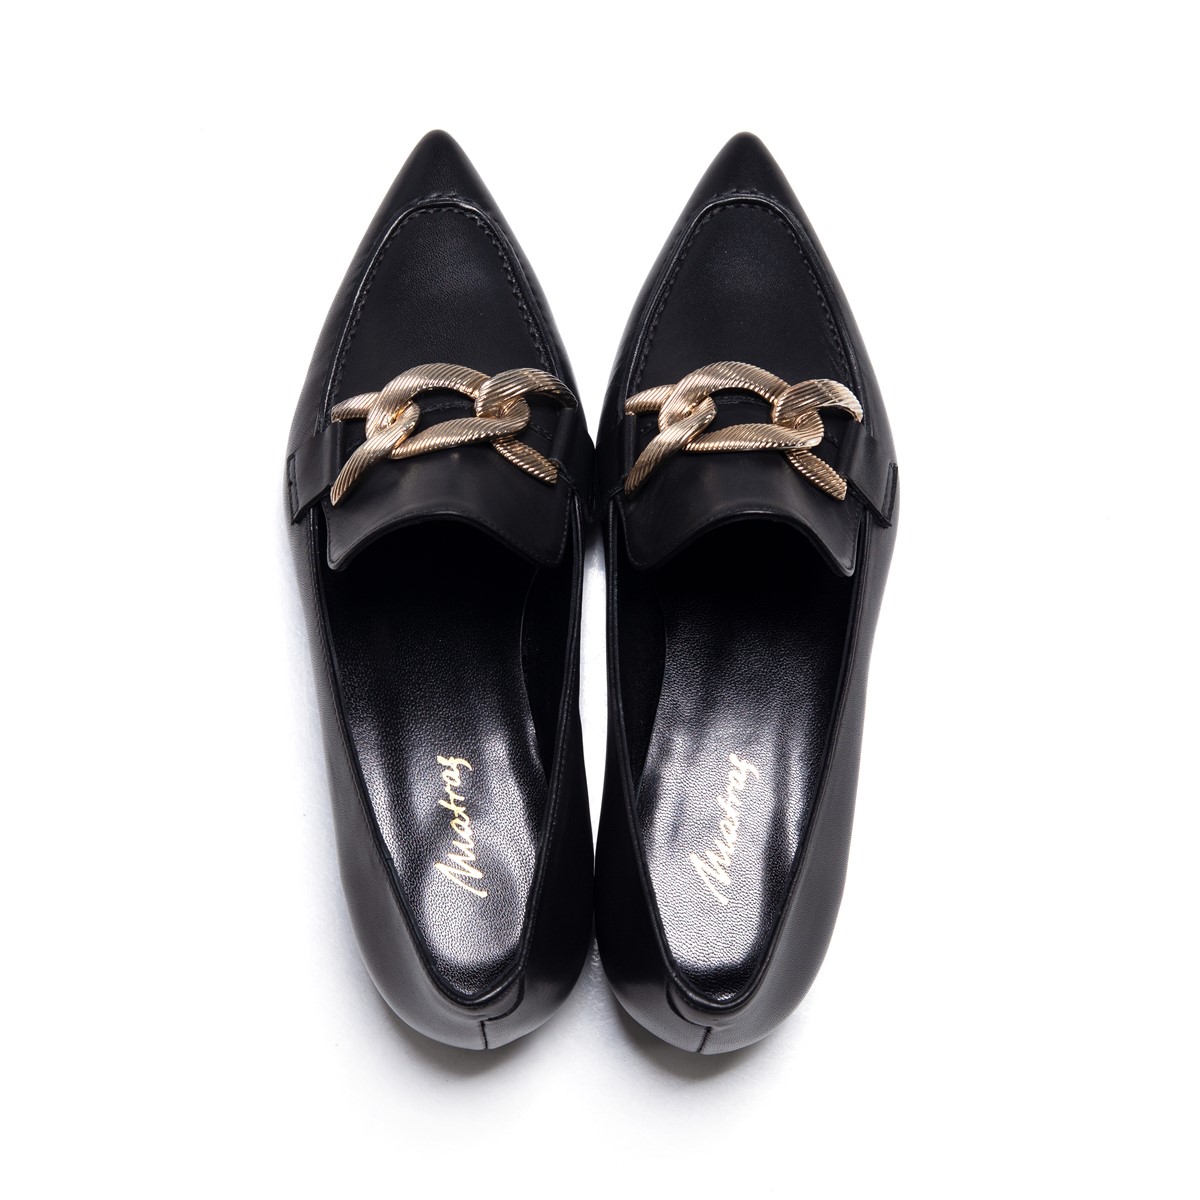 Matraş Kadın Klasik Ayakkabı Siyah 9FF-1444